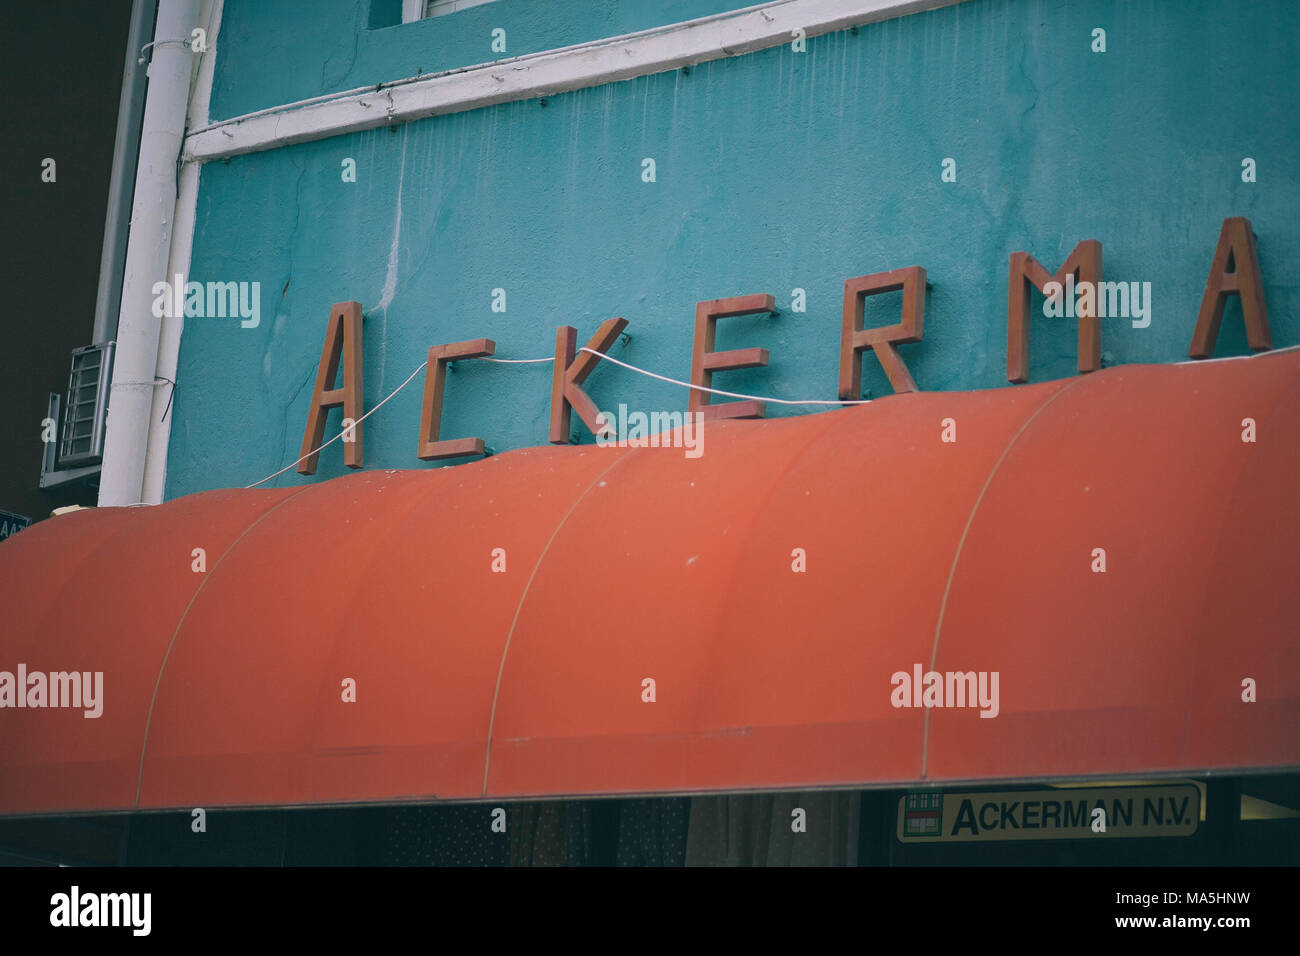 Ackerman sign in tipografia in metallo di colore arancione su willemstad, isola di curazao Foto Stock